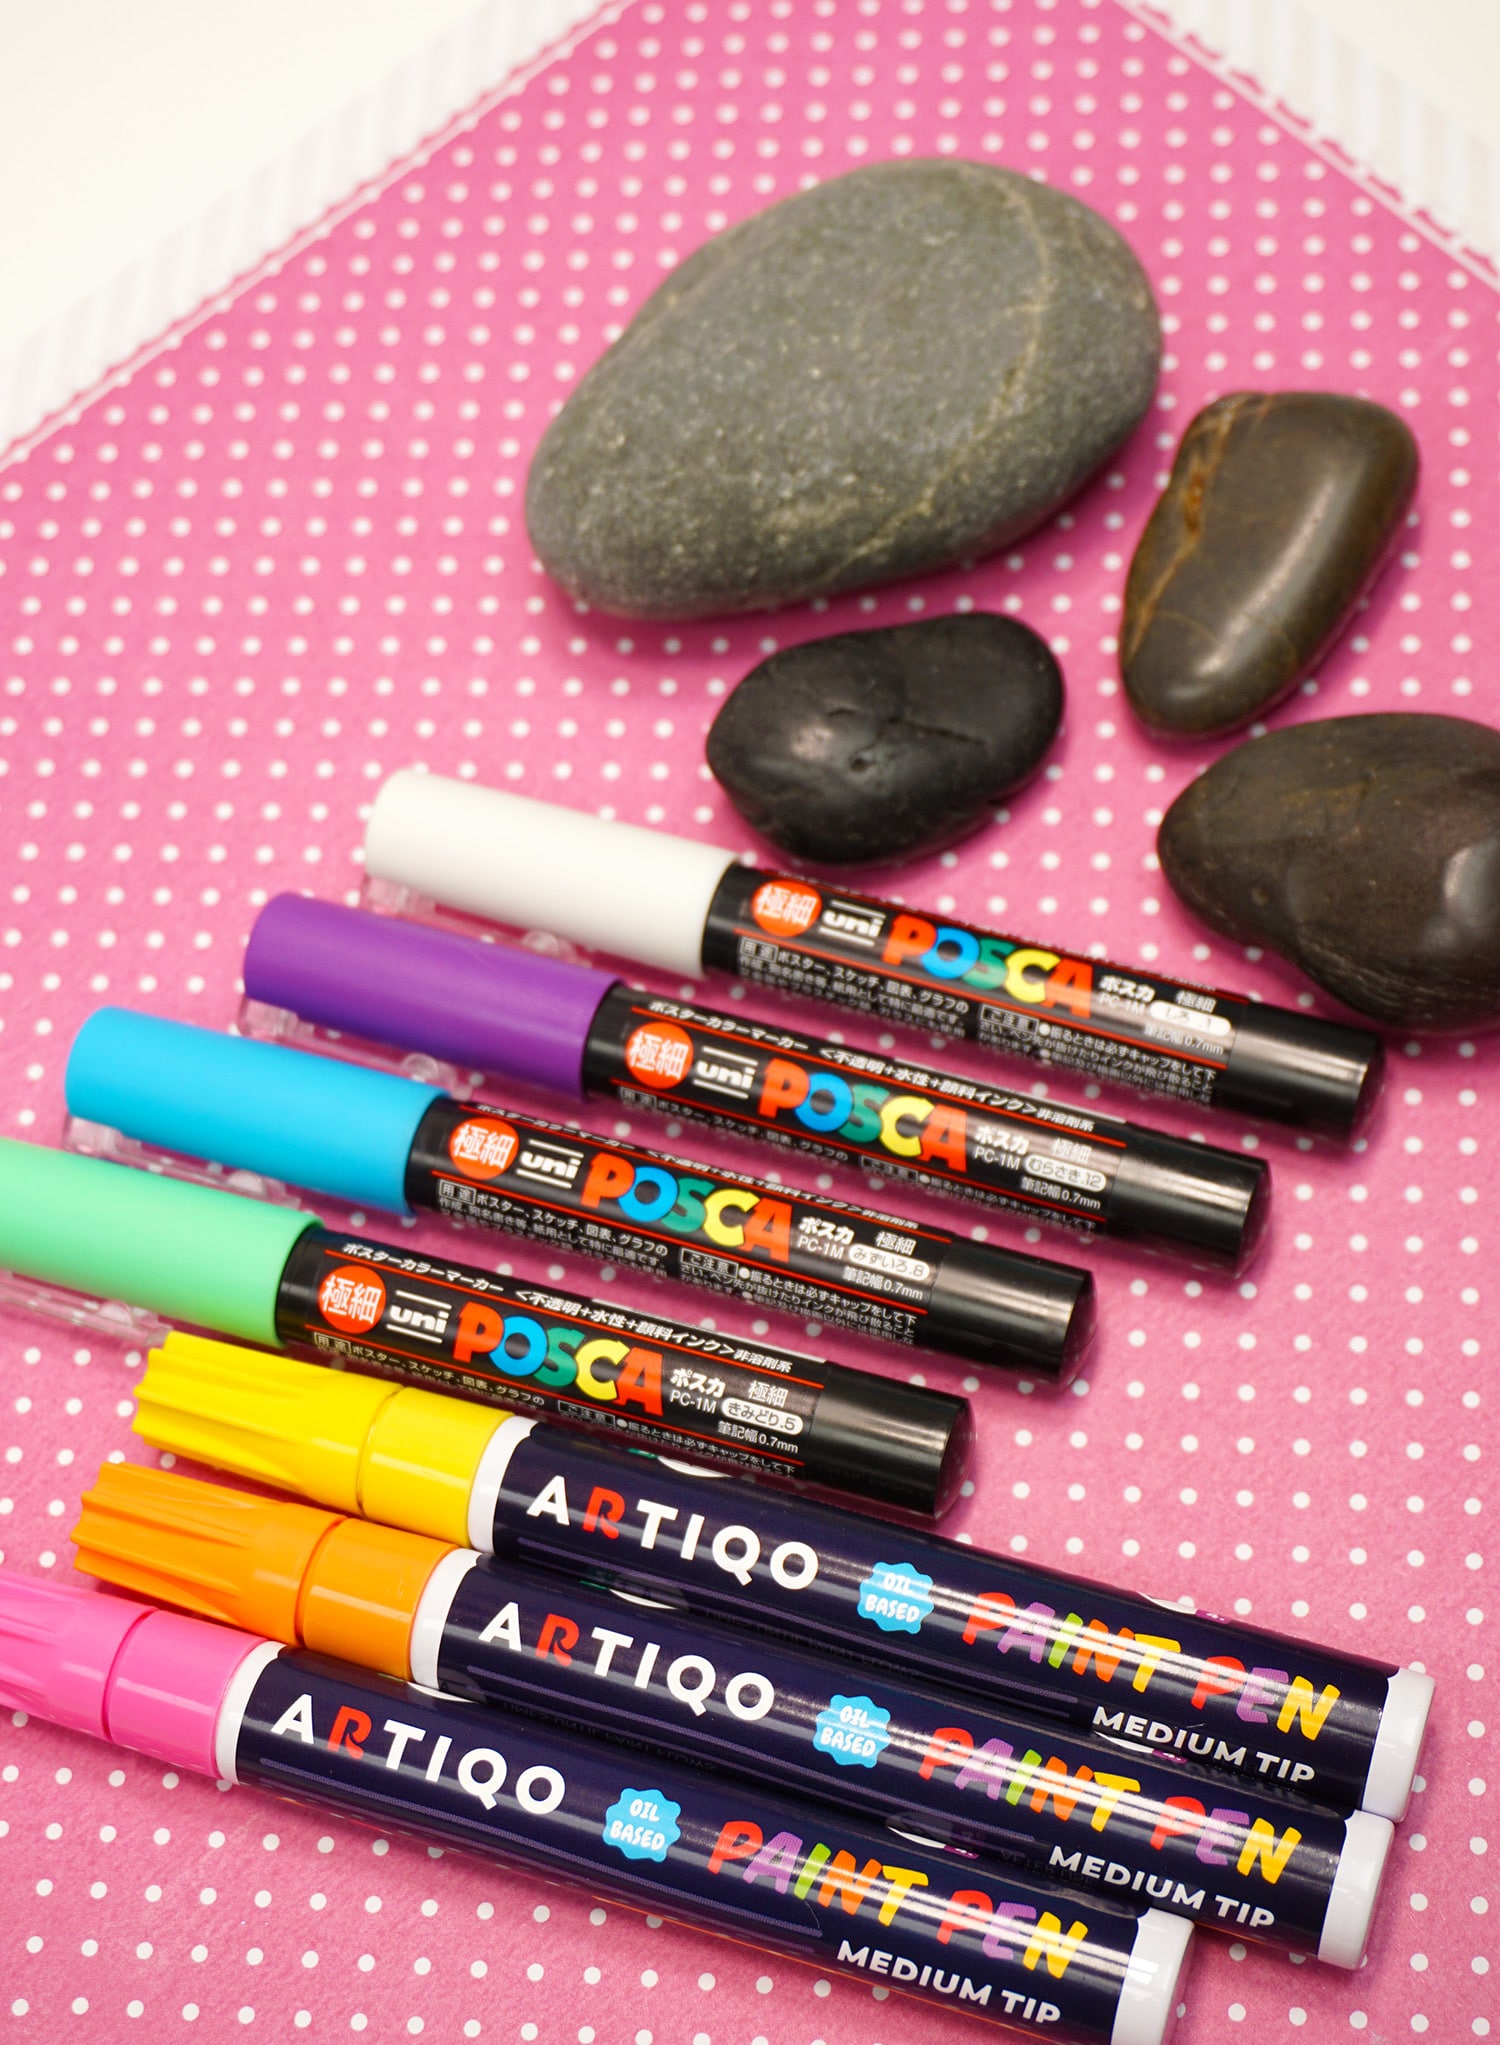 Paint Pens for Rocks: 12 Rock Paint Markers